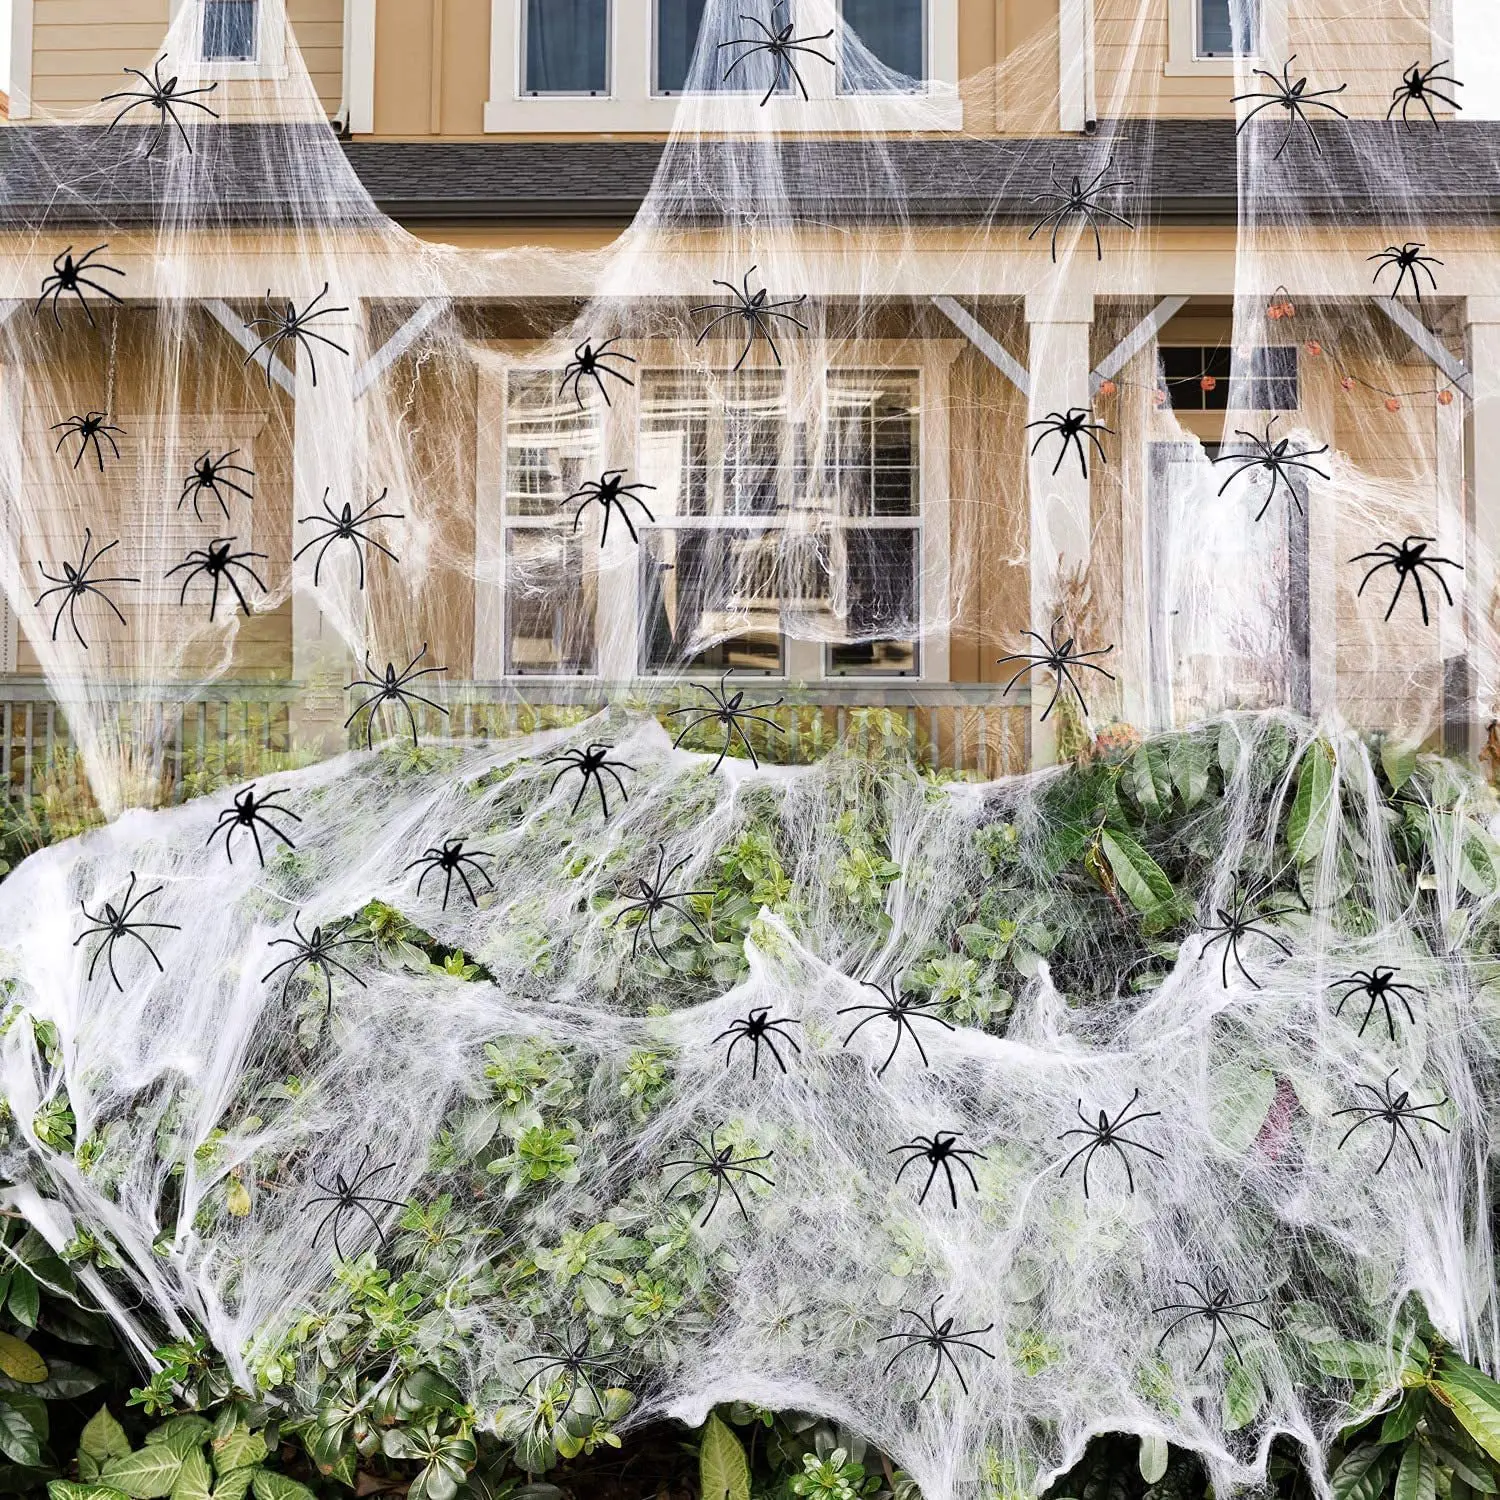 Superstrech Glow in the Dark Spider Web Decoration 